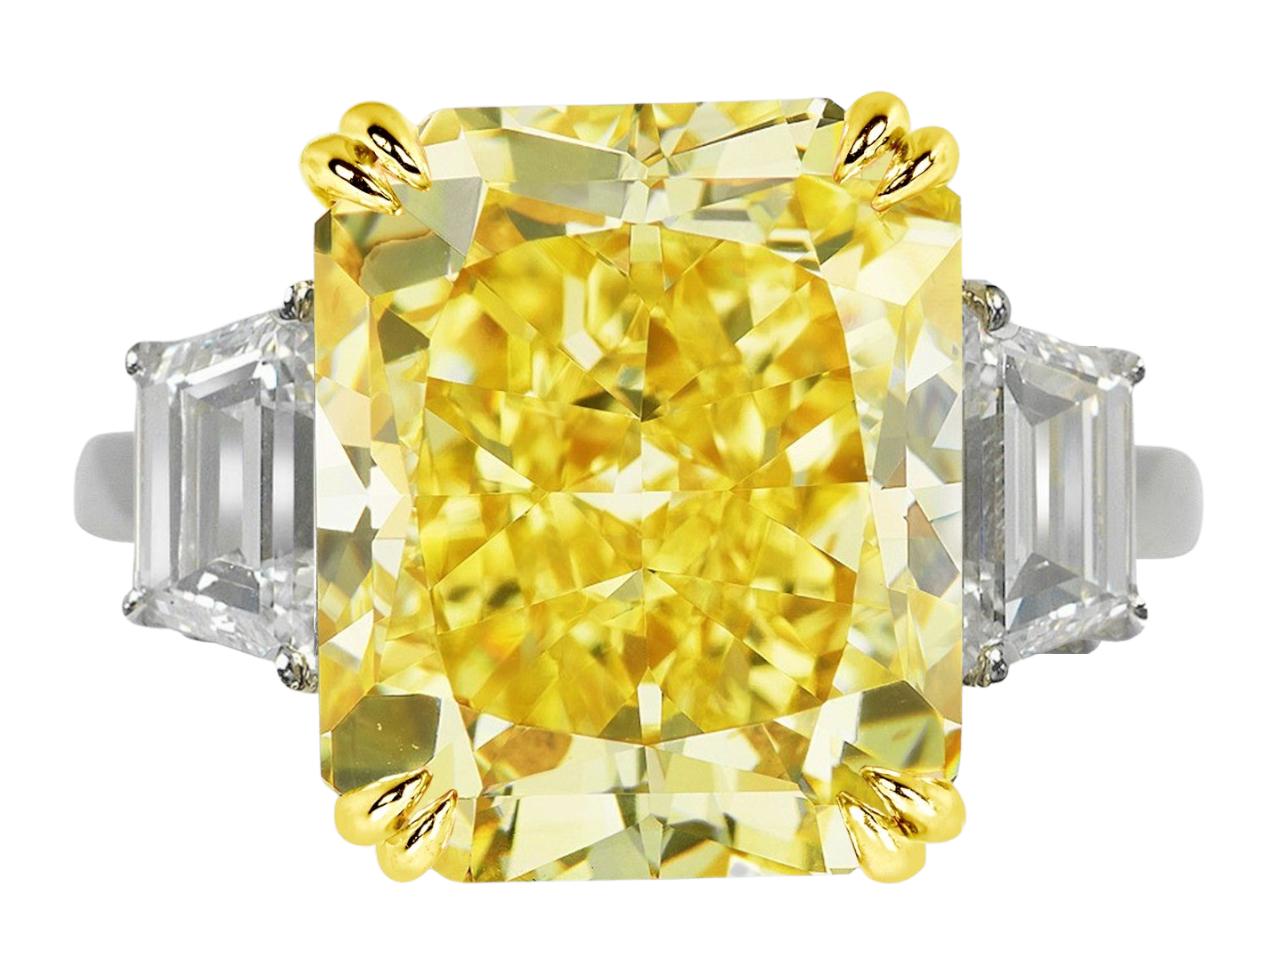 Ce magnifique diamant Antinori di San Pietro ROMA certifié GIA de 5 carats de couleur jaune fantaisie est en or blanc et jaune 18 carats. Les deux trapèzes de diamants blancs situés de part et d'autre de la pierre centrale sont 100% propres à l'œil